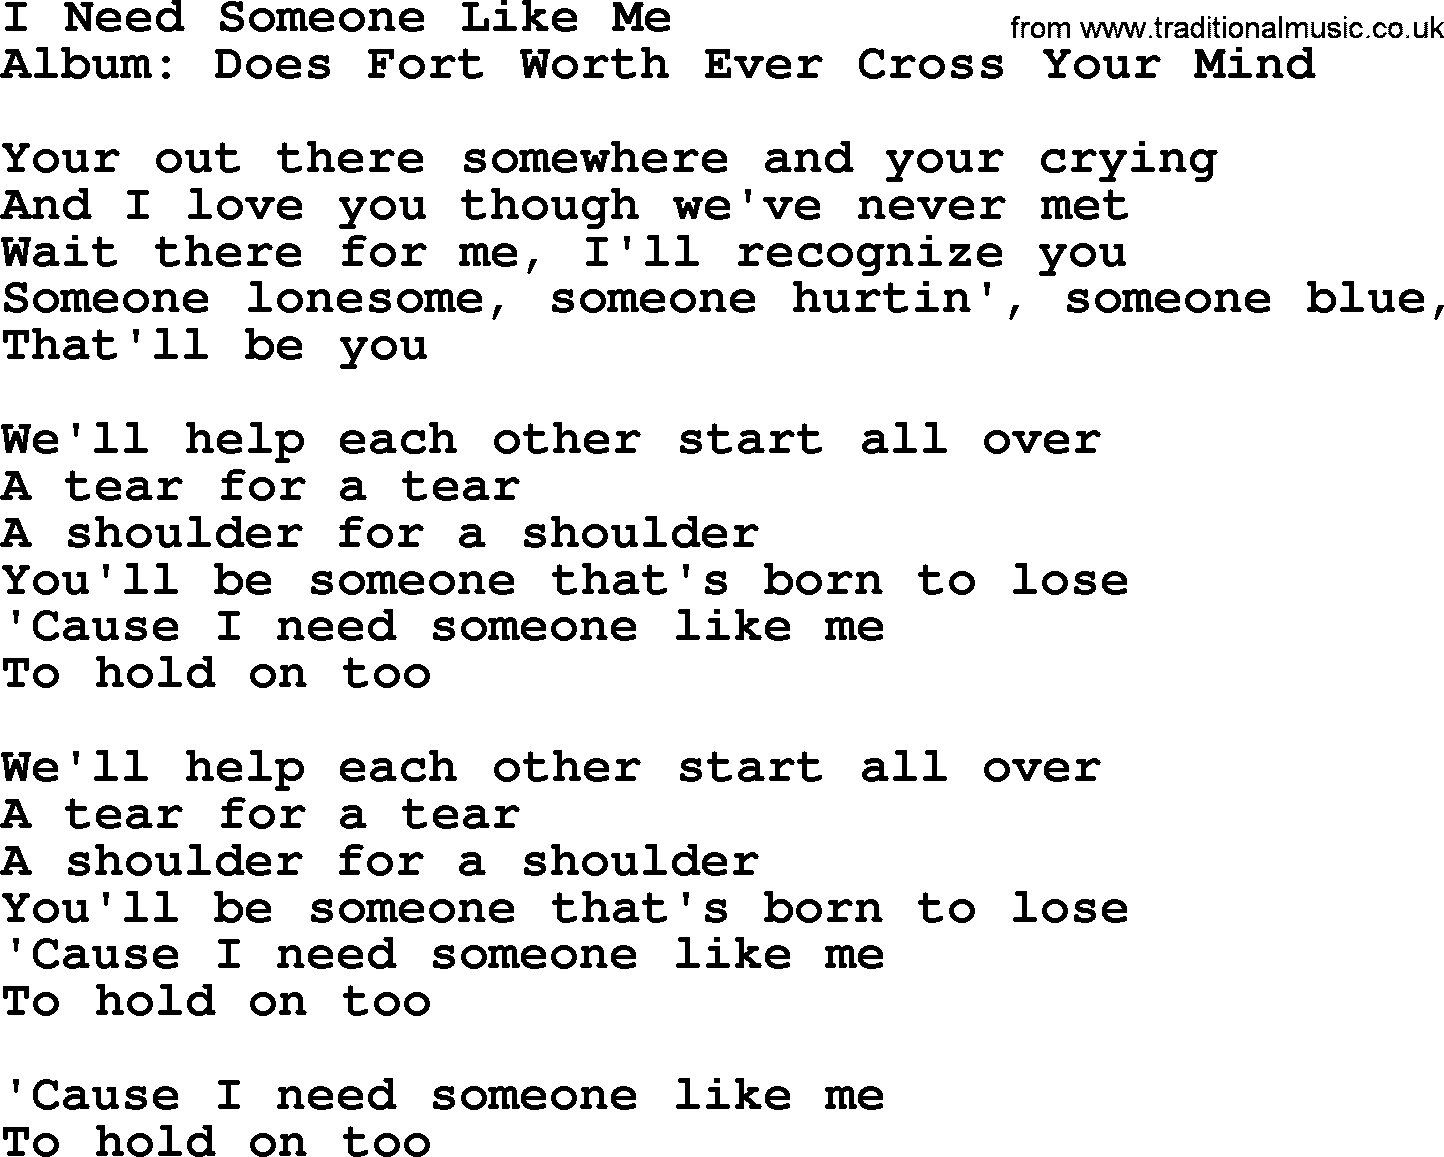 George Strait song: I Need Someone Like Me, lyrics